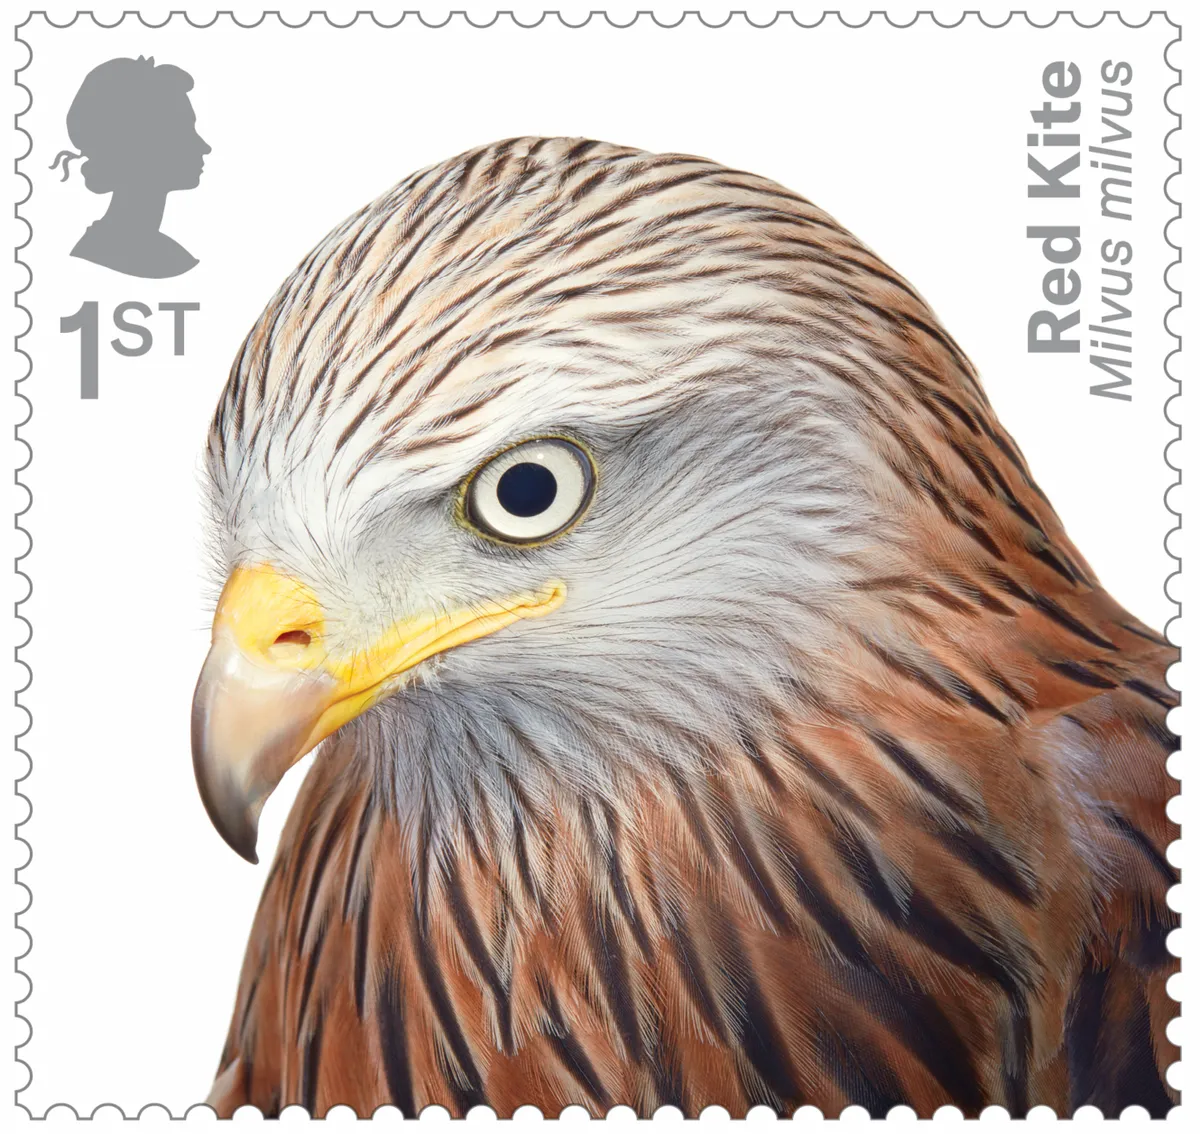 Birds of Prey Red Kite 400% stamp